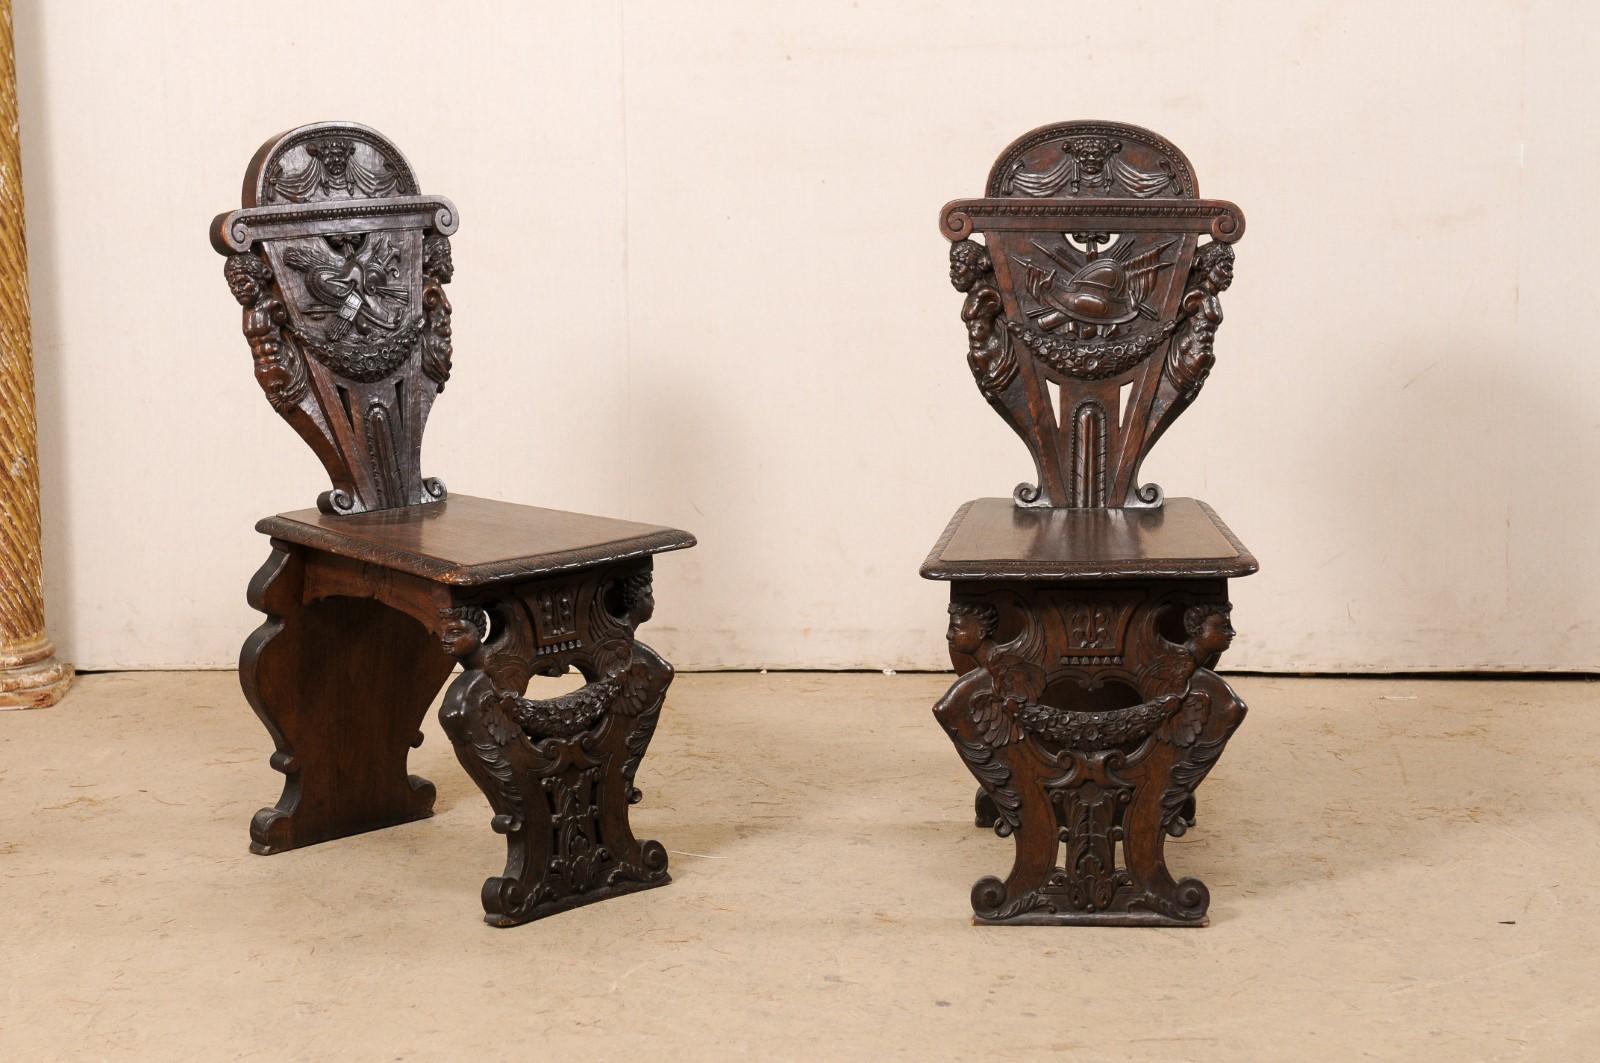 Ensemble de six chaises de salon anglaises de style Renaissance, finement sculptées, datant du tournant du XIXe et du XXe siècle. Cet ensemble de chaises de conseil anciennes provenant d'Angleterre a été sculpté à la main de manière ornementale dans